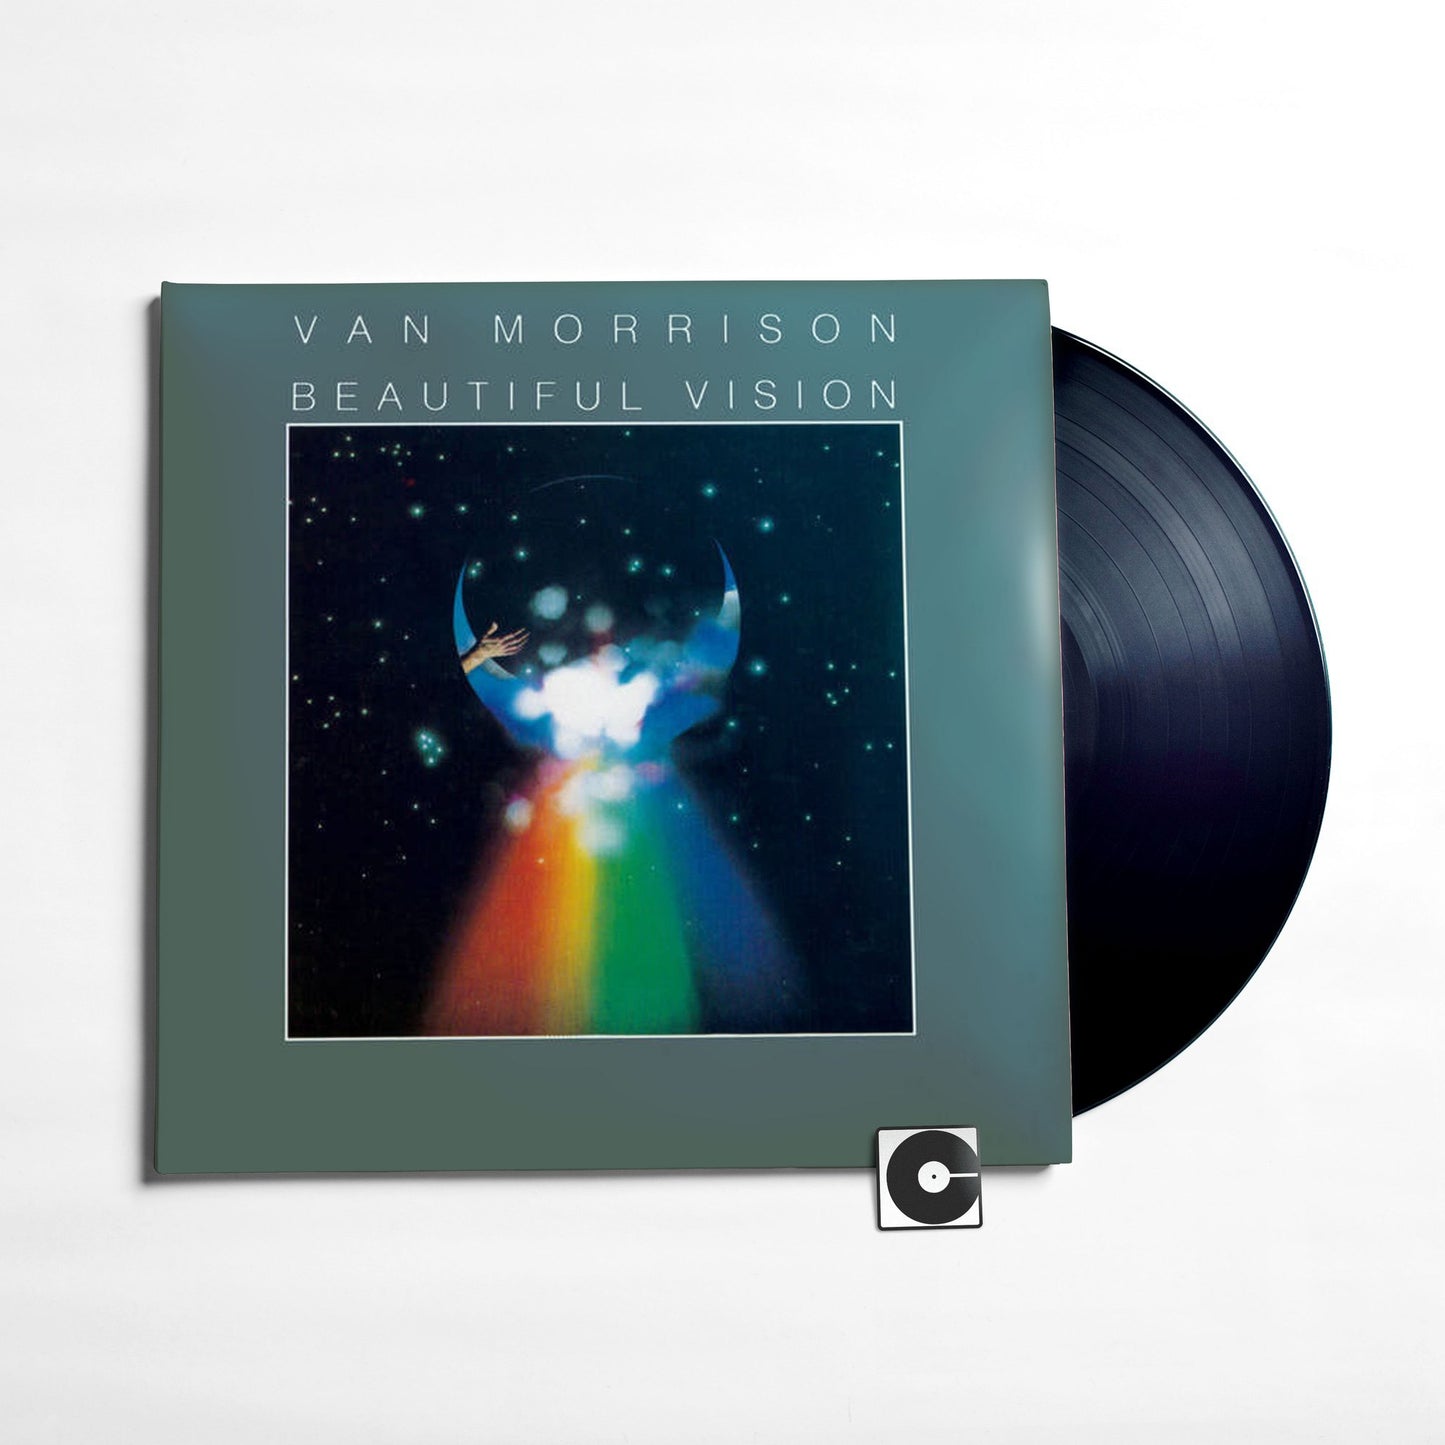 Van Morrison - "Beautiful Vision"